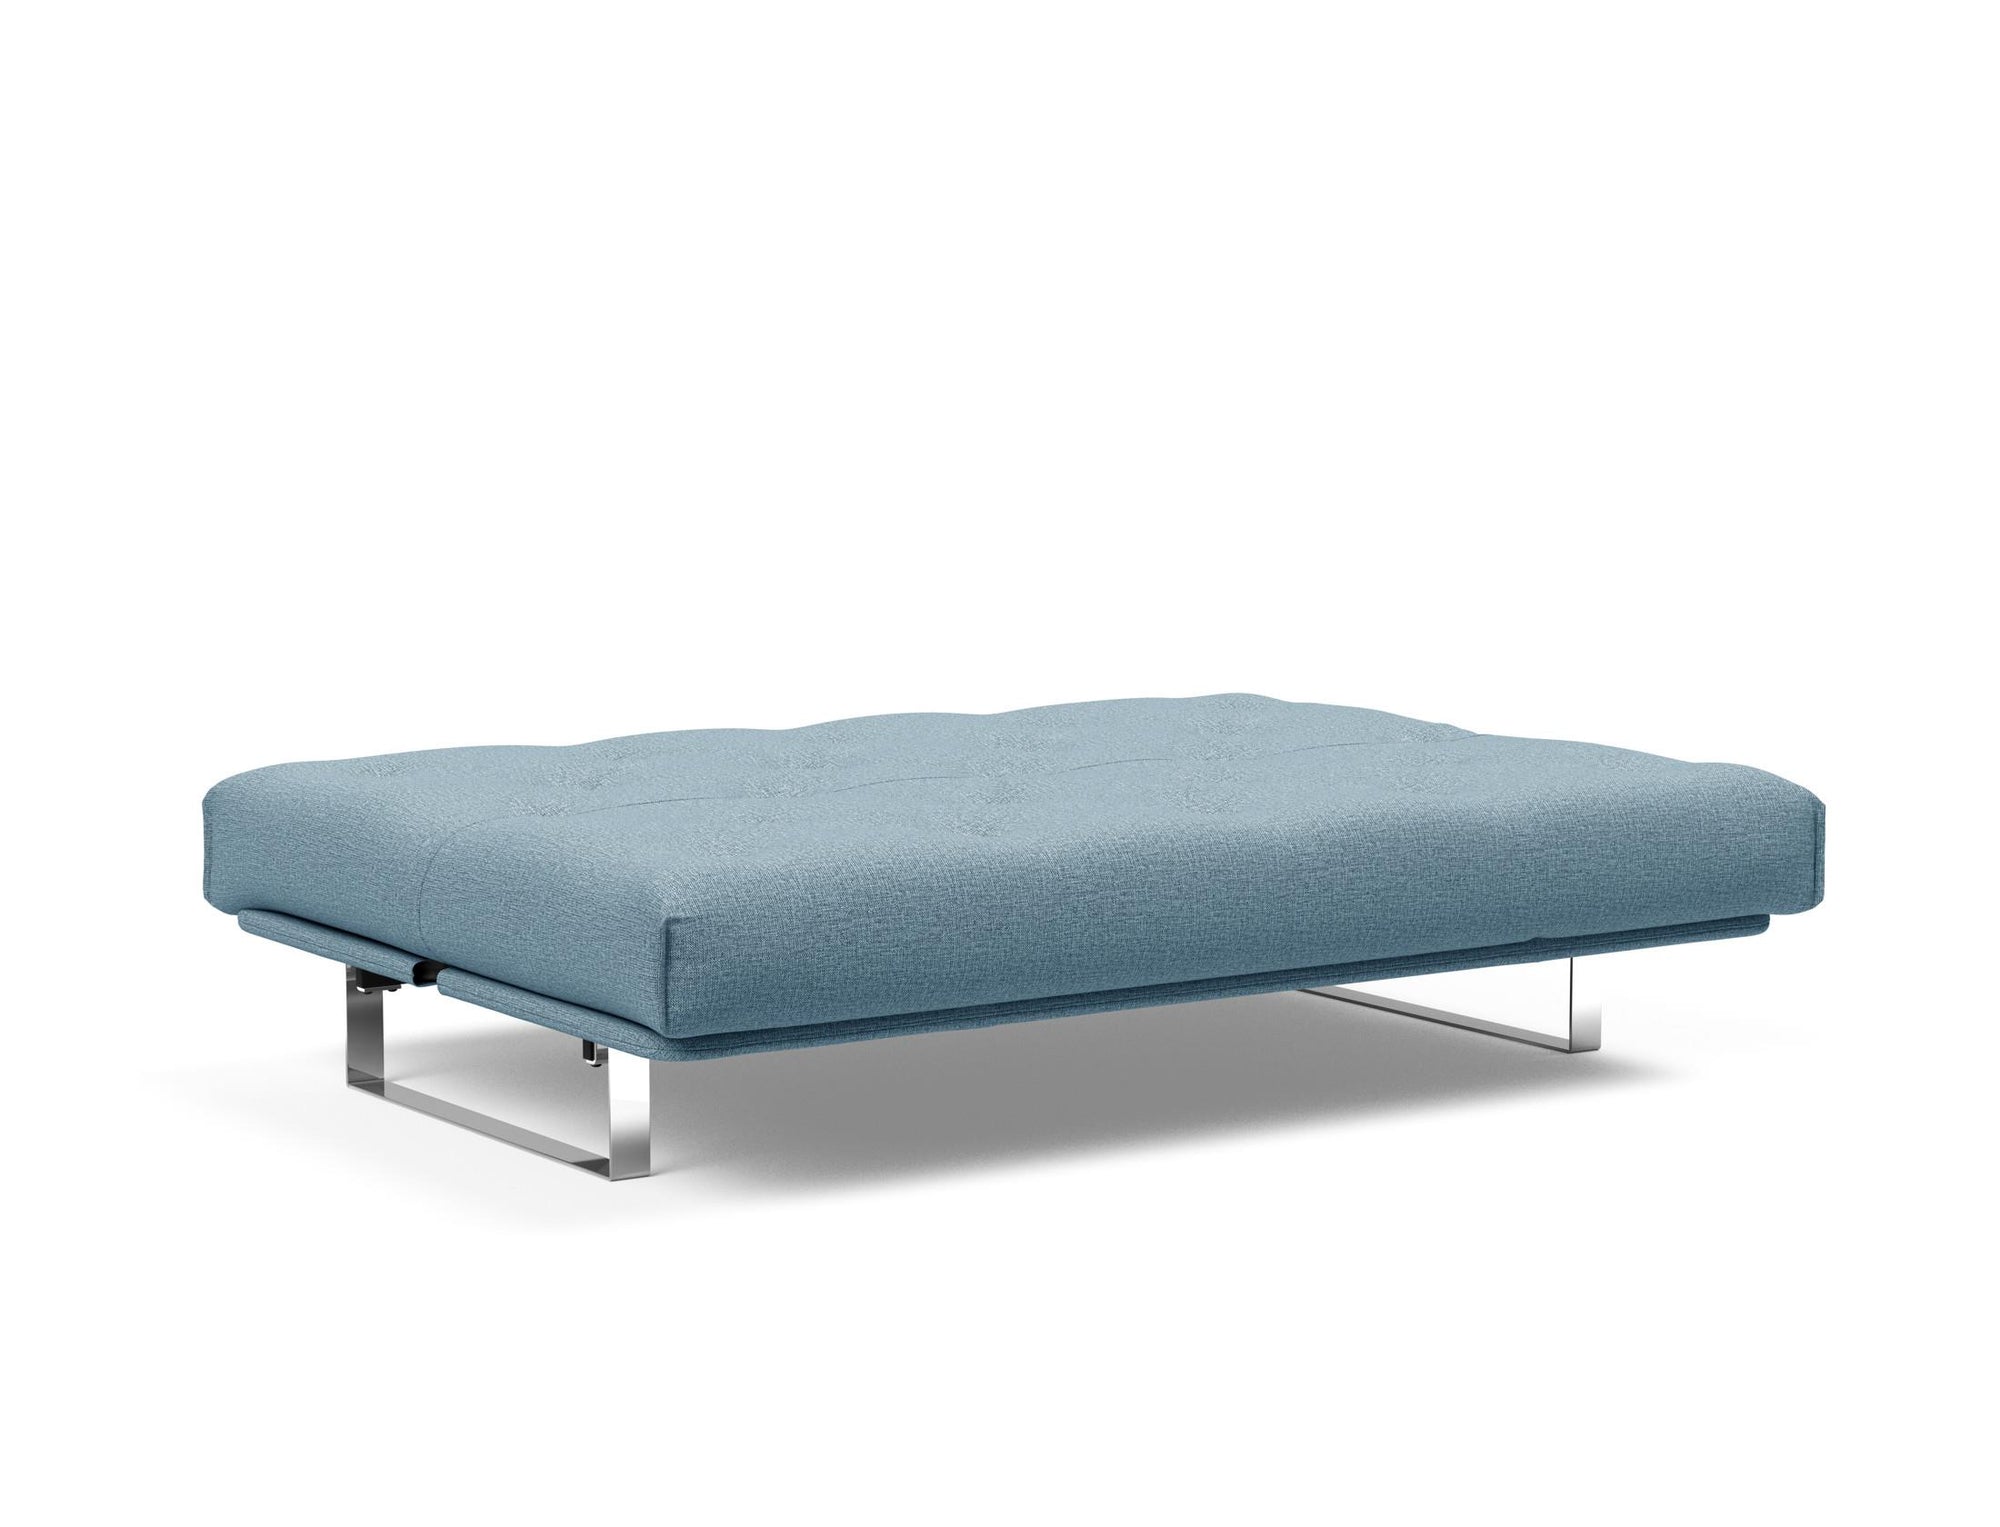 MINIMUM Super Soft Sofa Bed